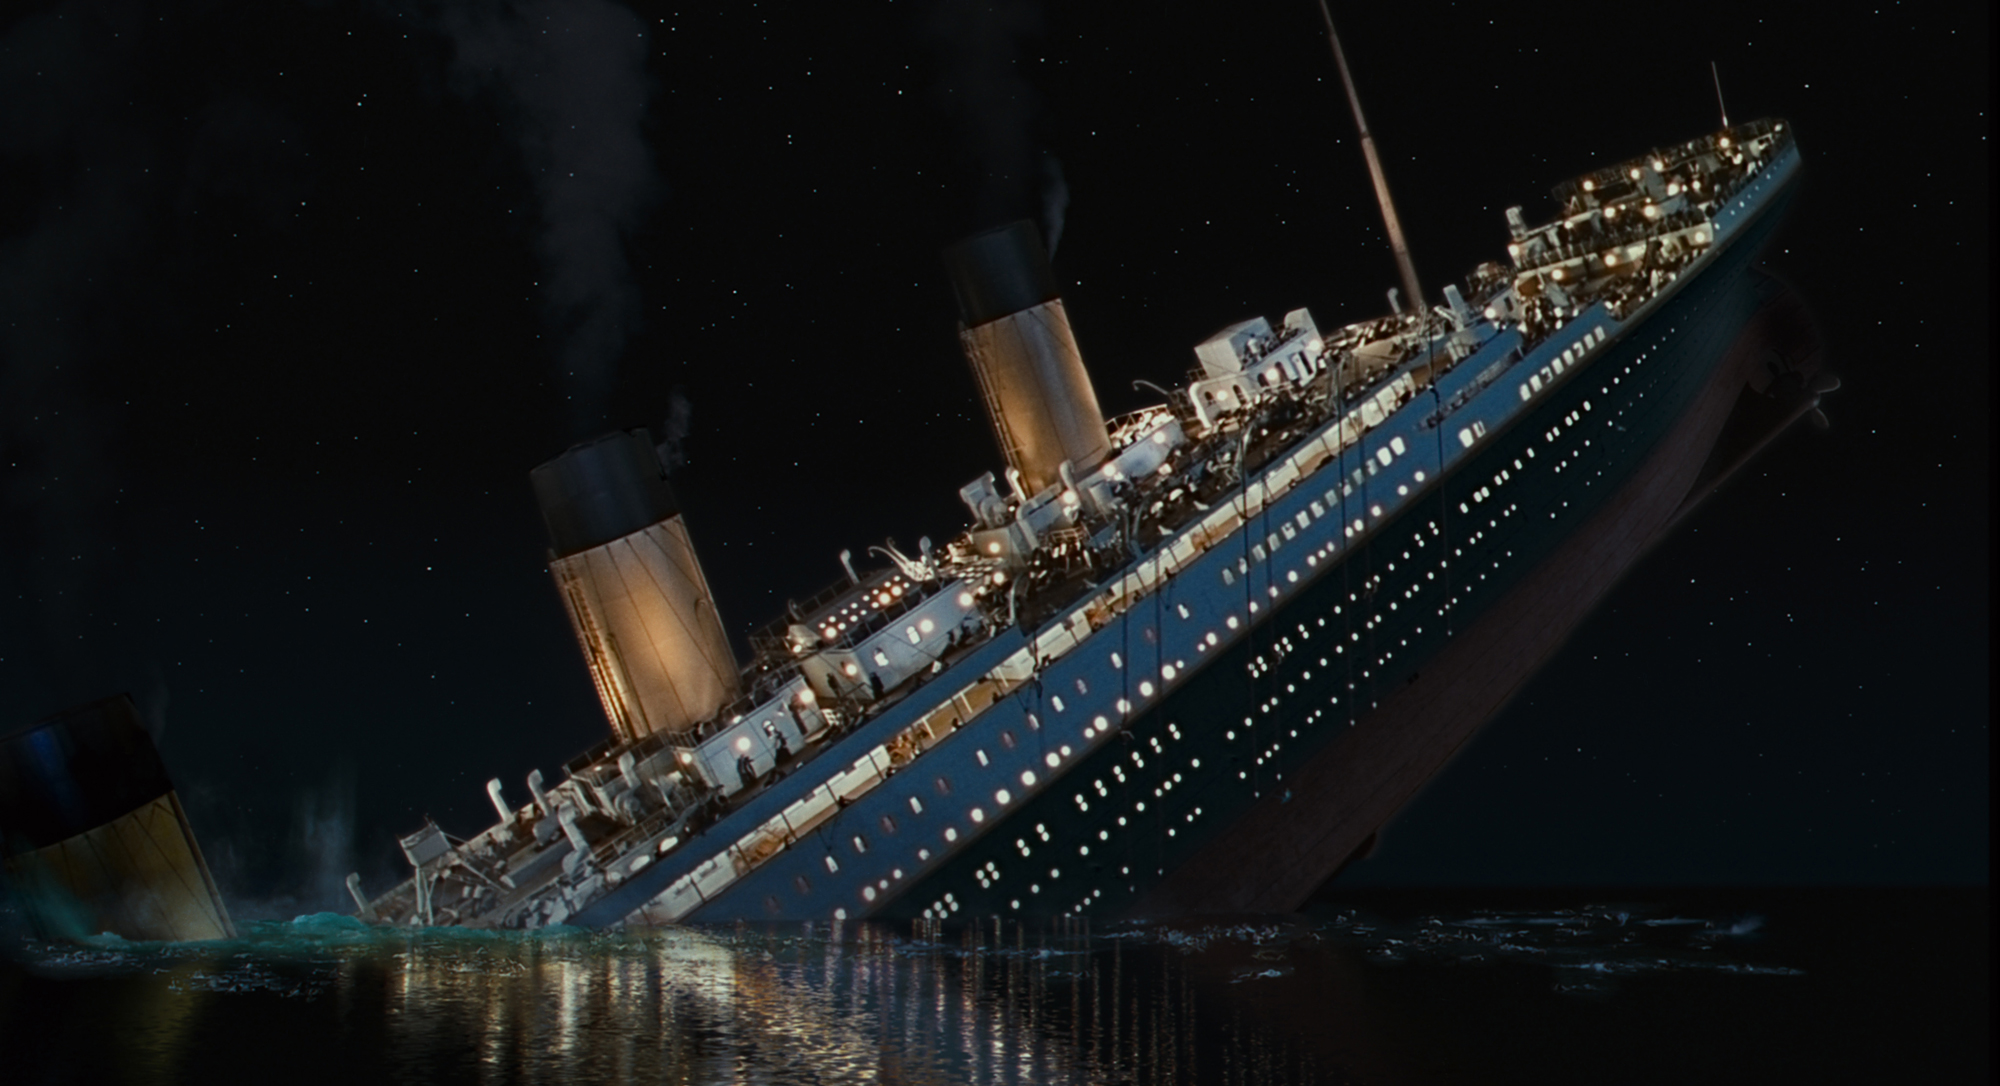 titanic, movie